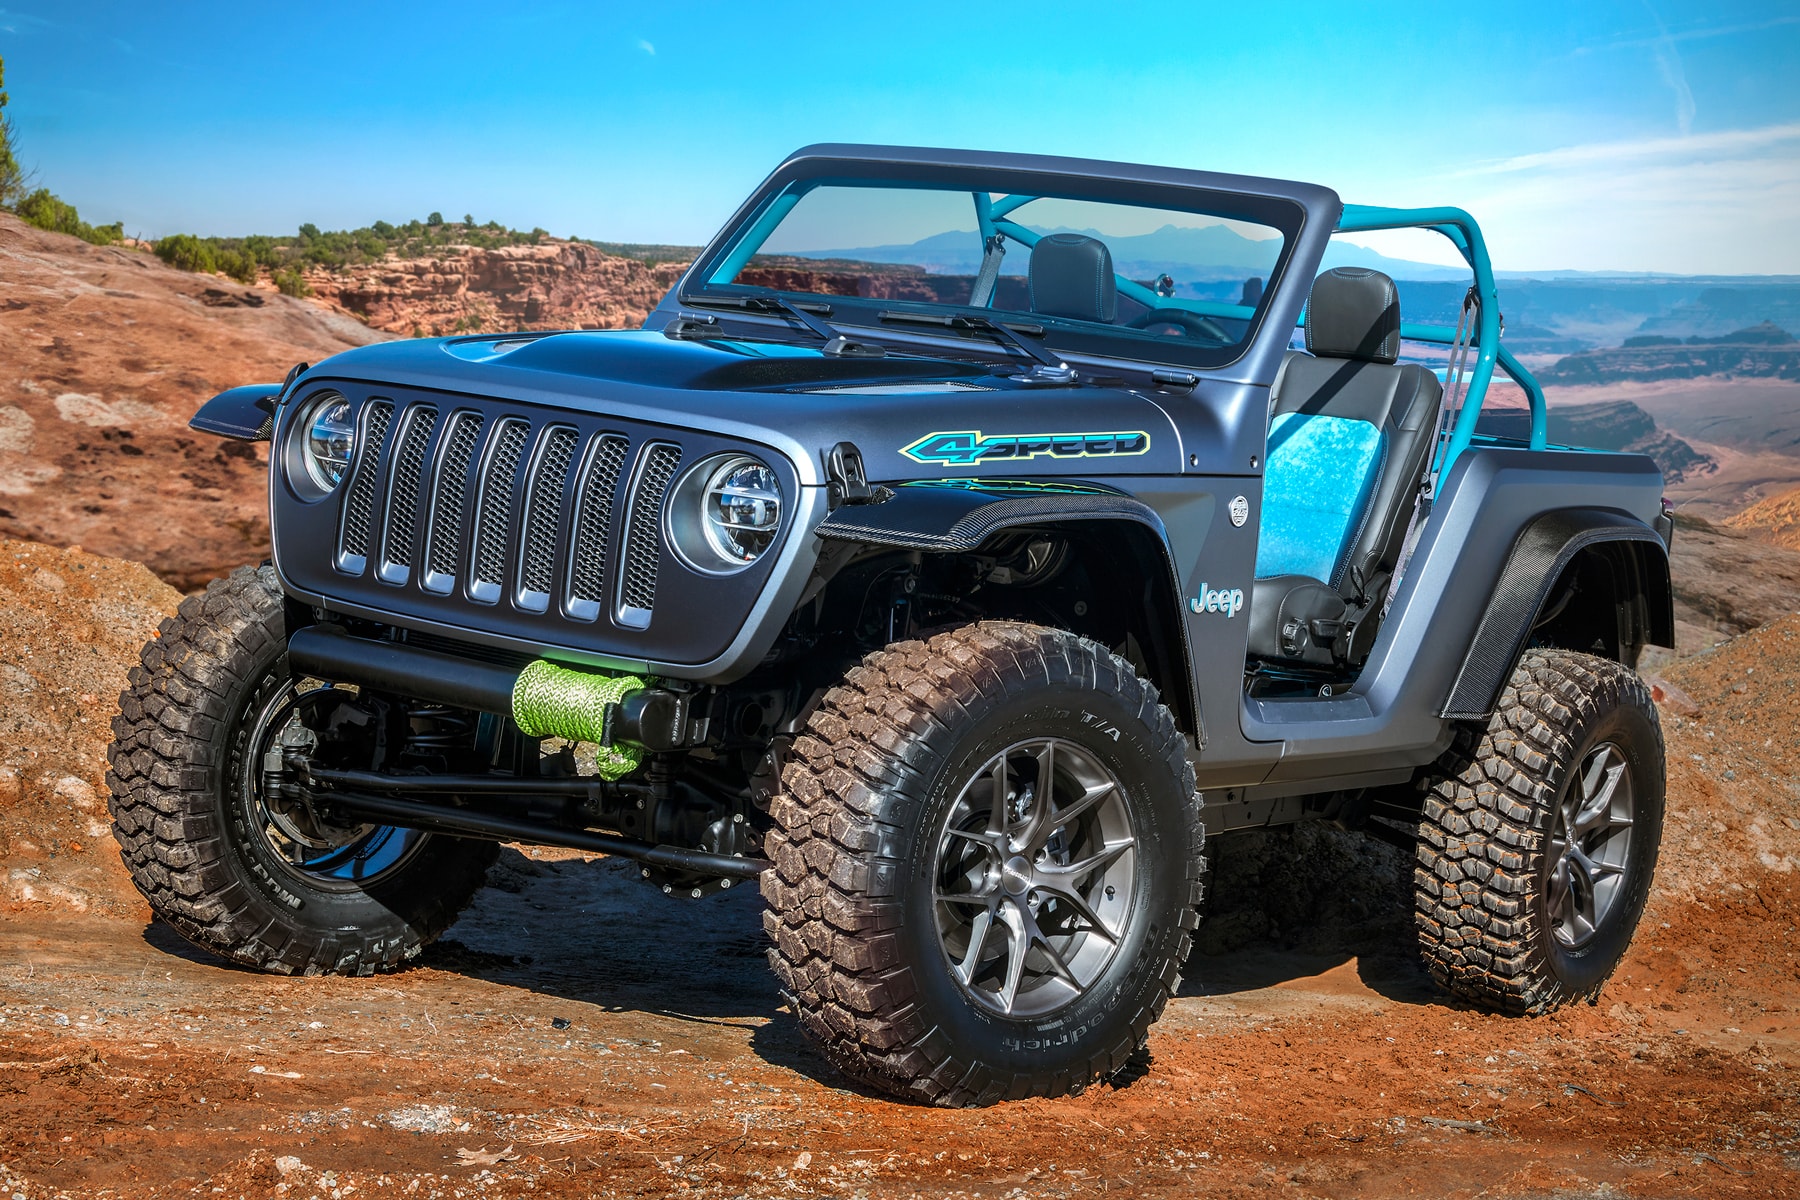 2018 Moab Easter Jeep Safari Concepts Hypebeast